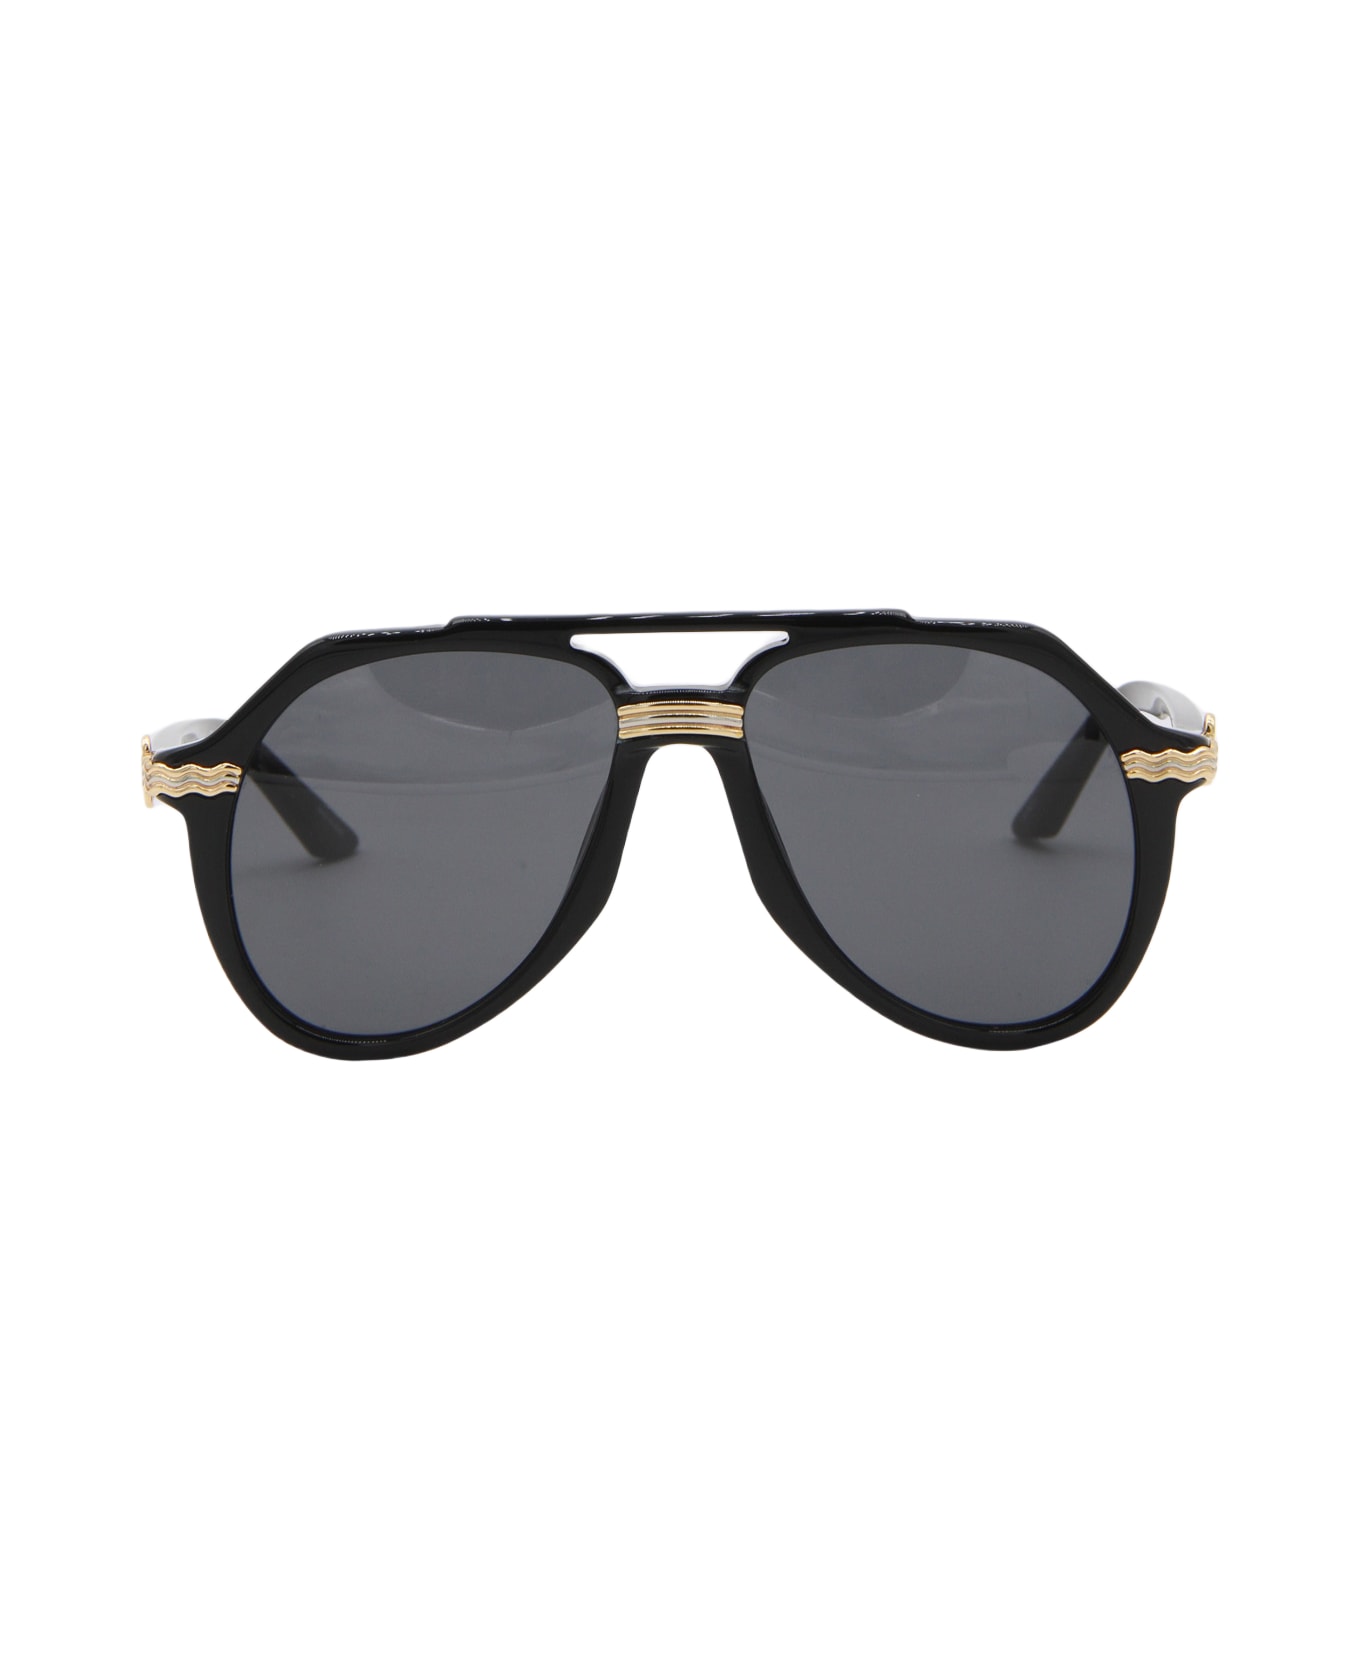 Casablanca Black Sunglasses - Black